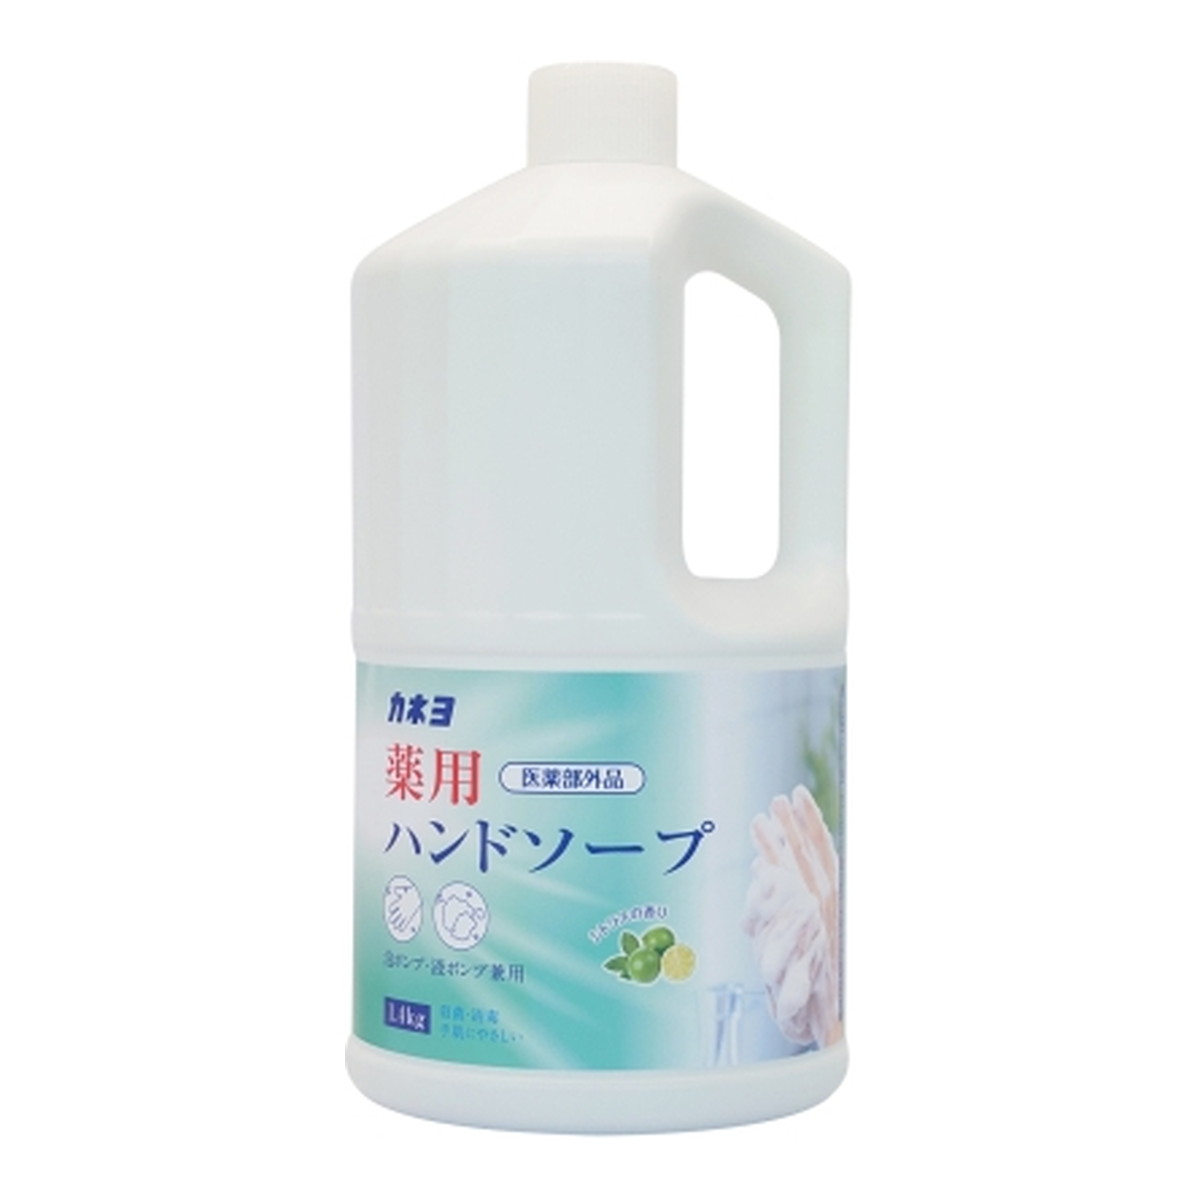 【令和・早い者勝ちセール】カネヨ石鹸 薬用 ハンドソープ シトラスの香り 1.4kg